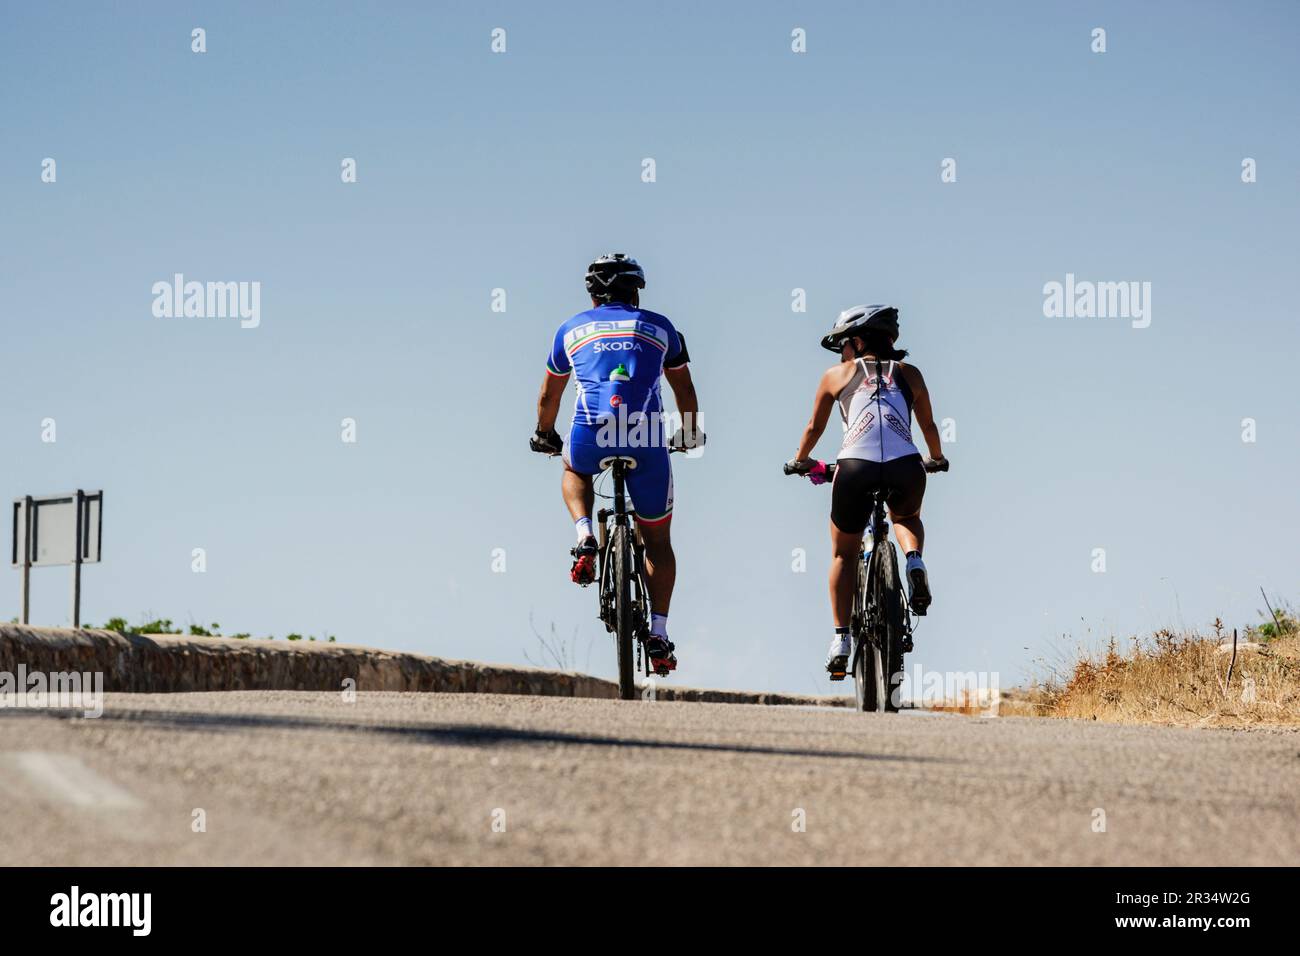 Ciclisti che scendono dal santuario di cura, Llucmajor, maiorca, isole baleari, spagna, europa. Foto Stock